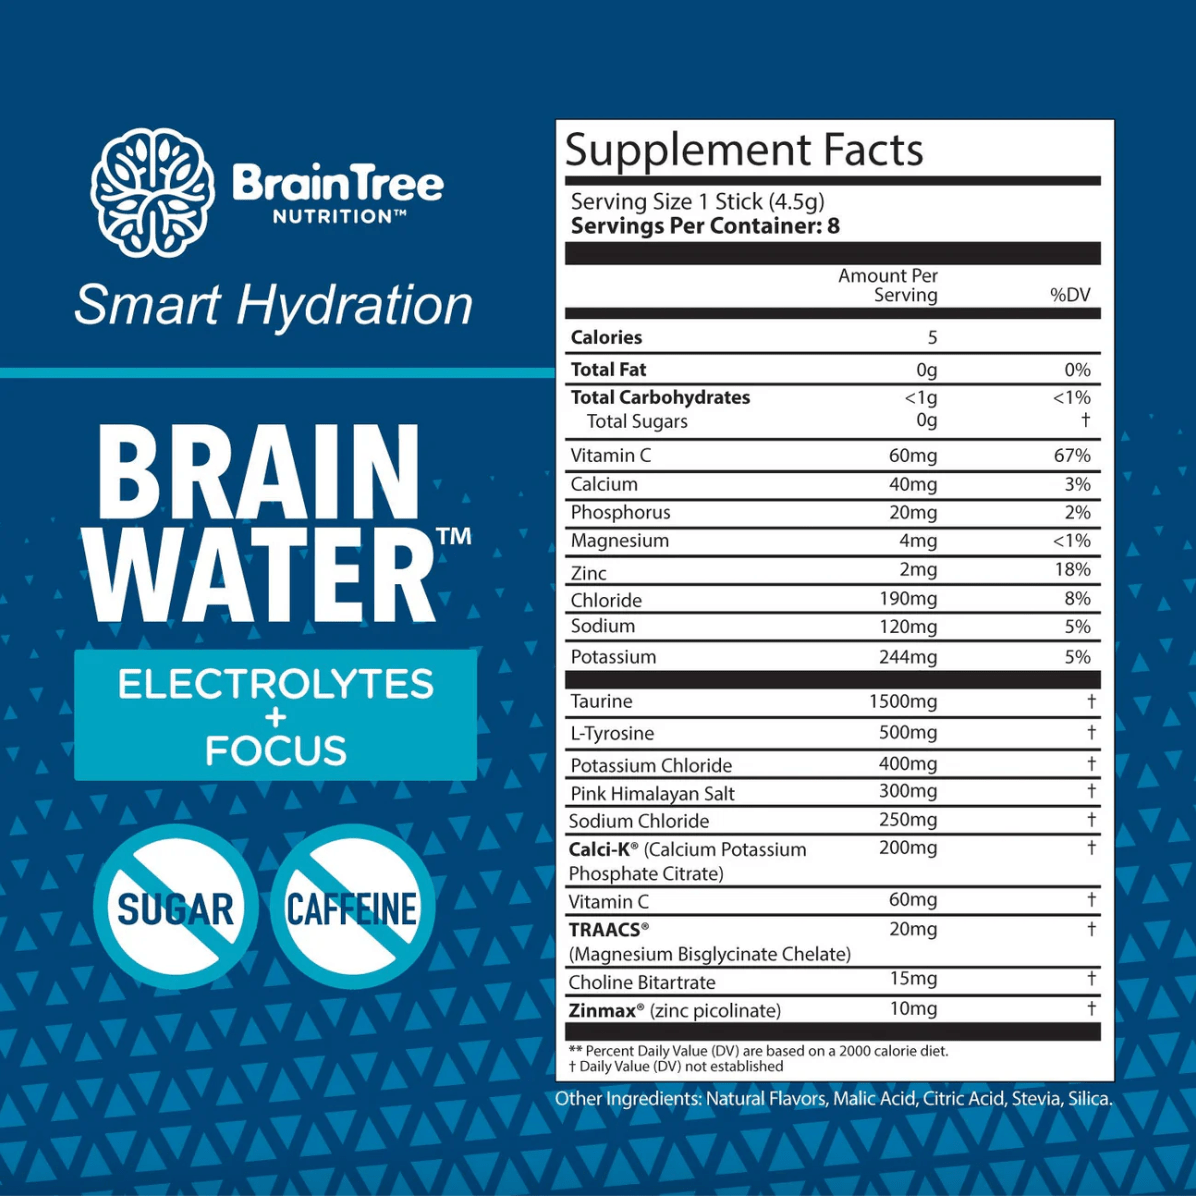 BrainTree Nutrition Brain Water Watermelon Electrolytes